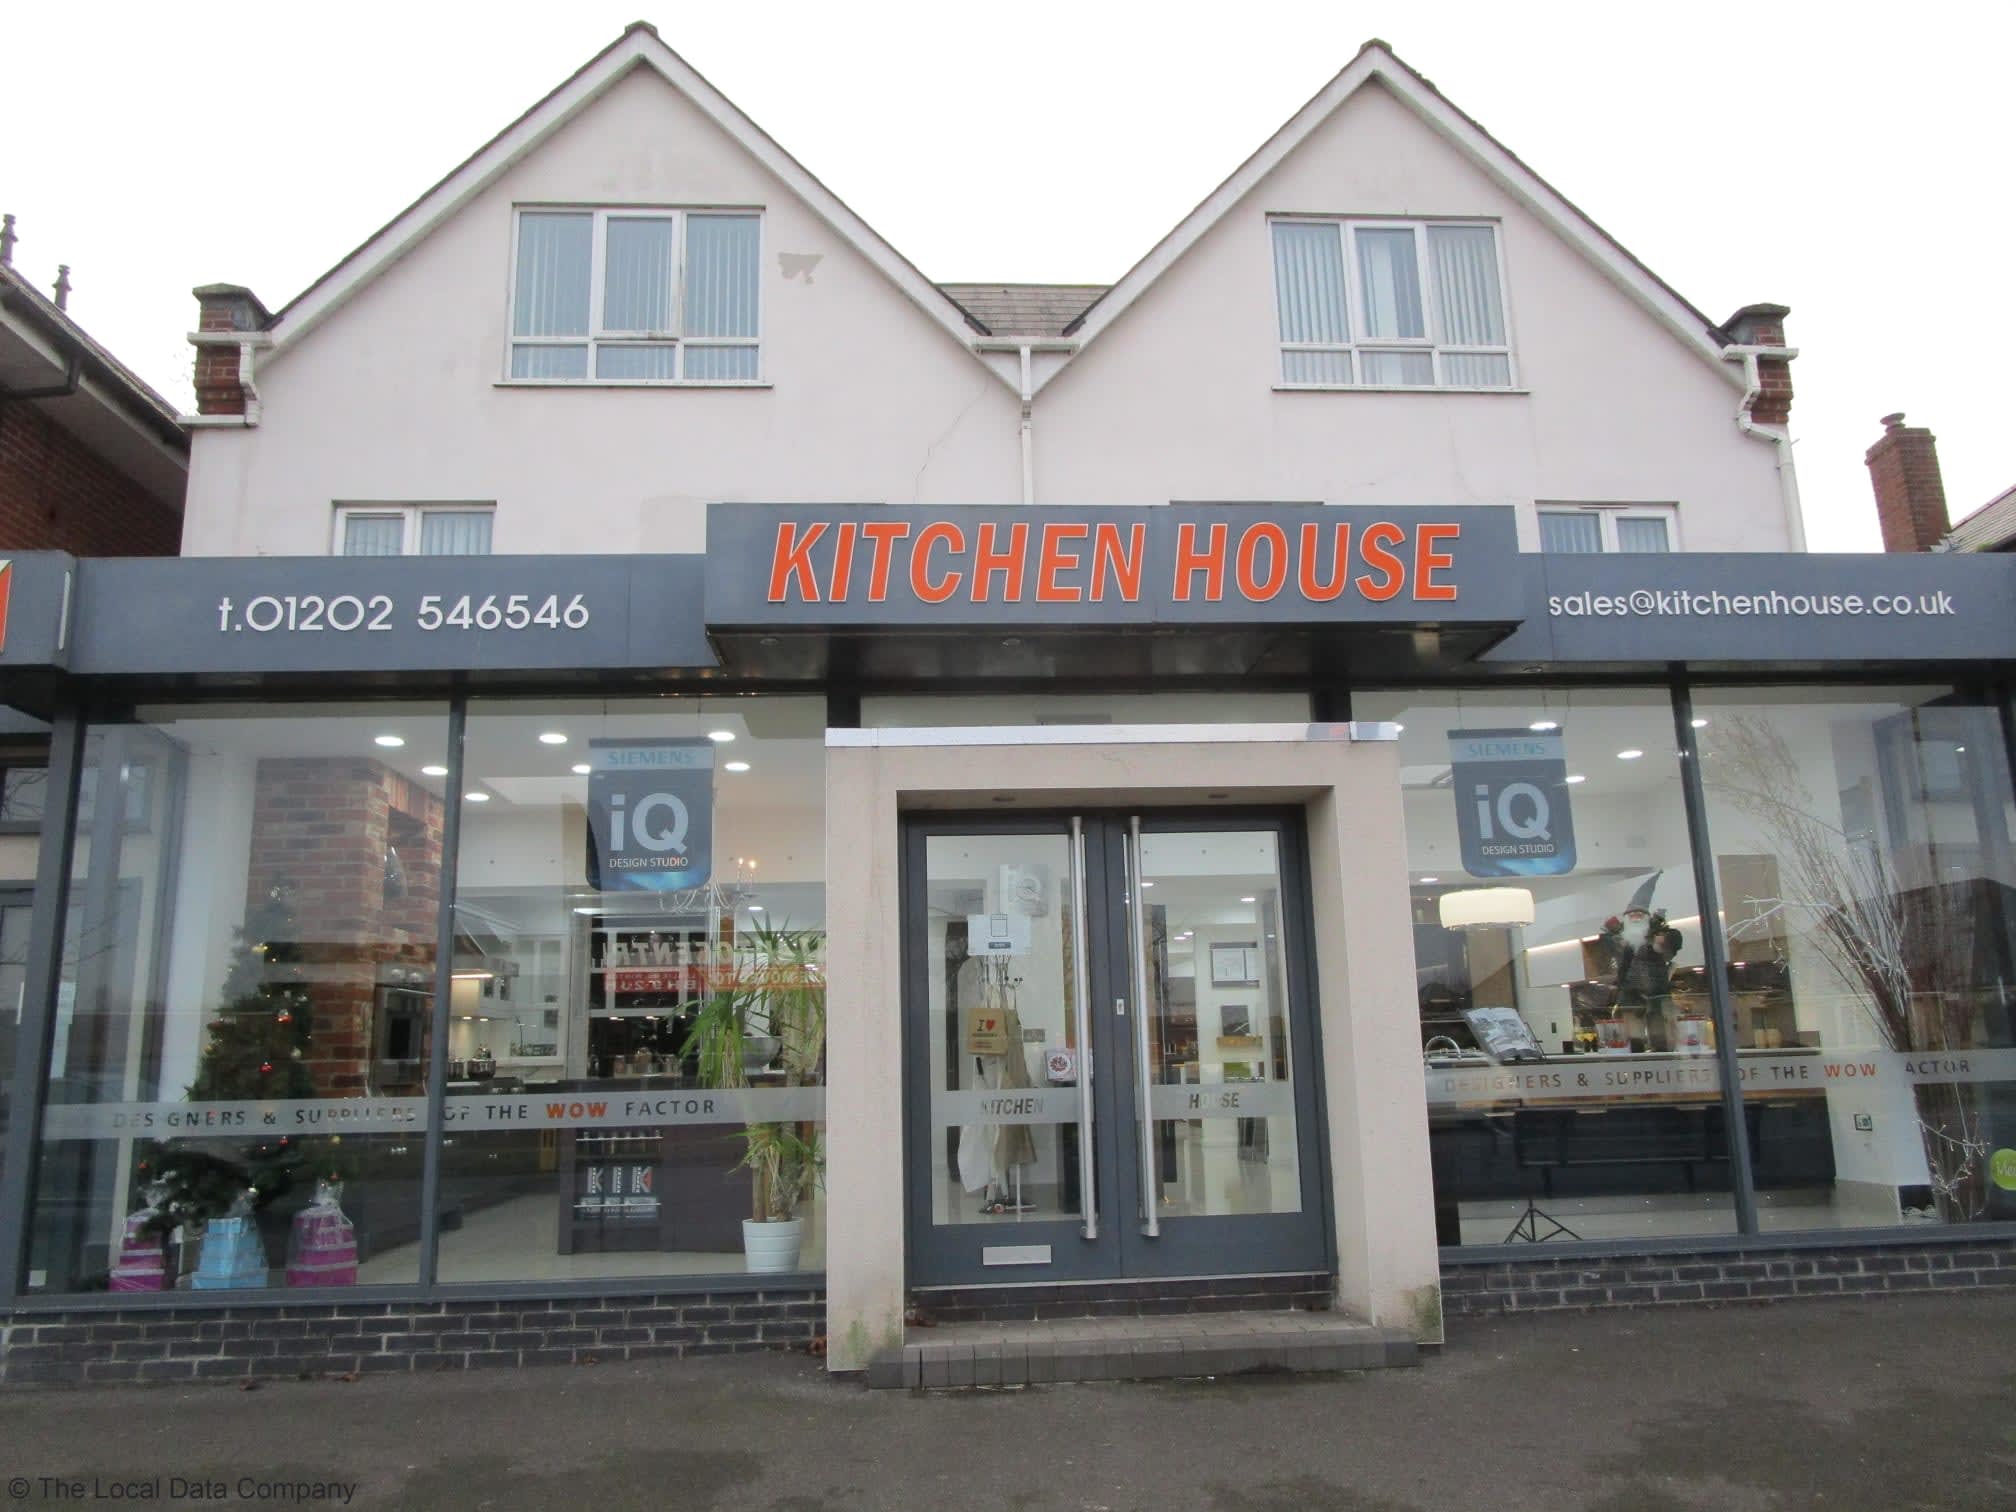 Images Kitchen House Ltd